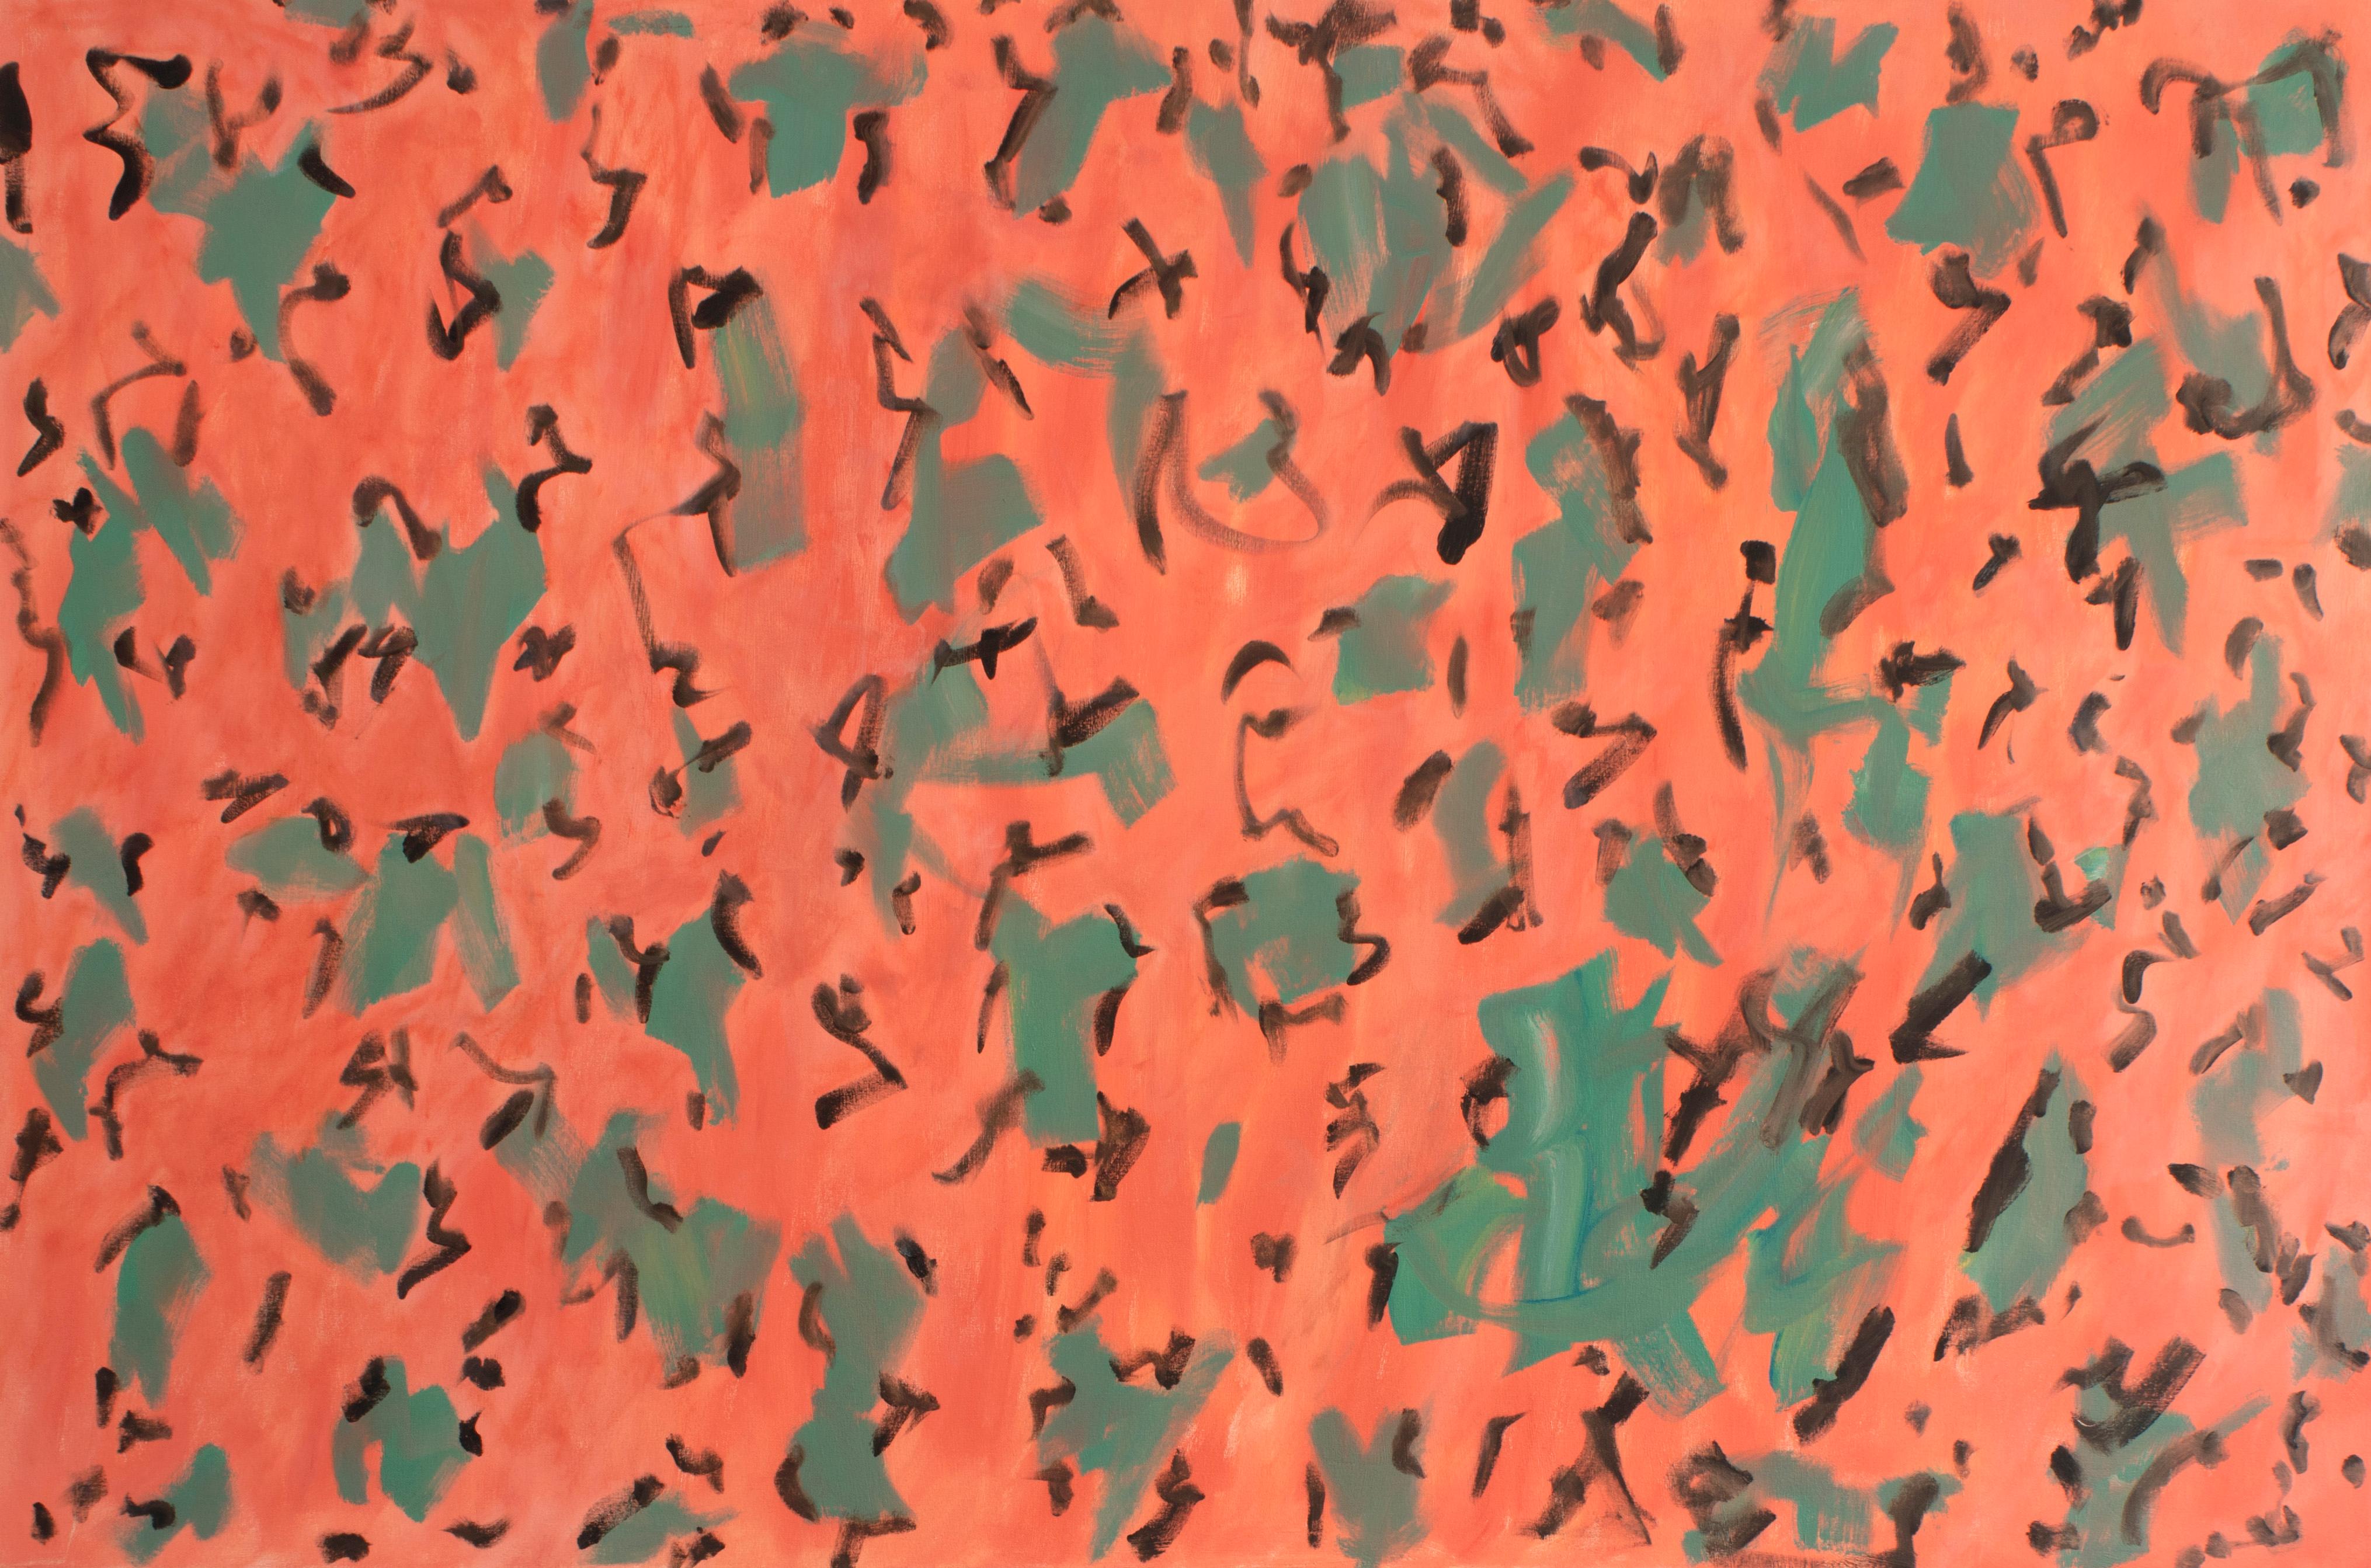 George McClancy (1930-2014) Abstrakte Mustermalerei. 
Acryl auf Leinwand 
48" x 72"

George McClancy erwarb einen MA in Malerei an der Katholischen Universität in Washington DC, wo er Schüler von Kenneth Noland war. George McClancy gehörte zu den